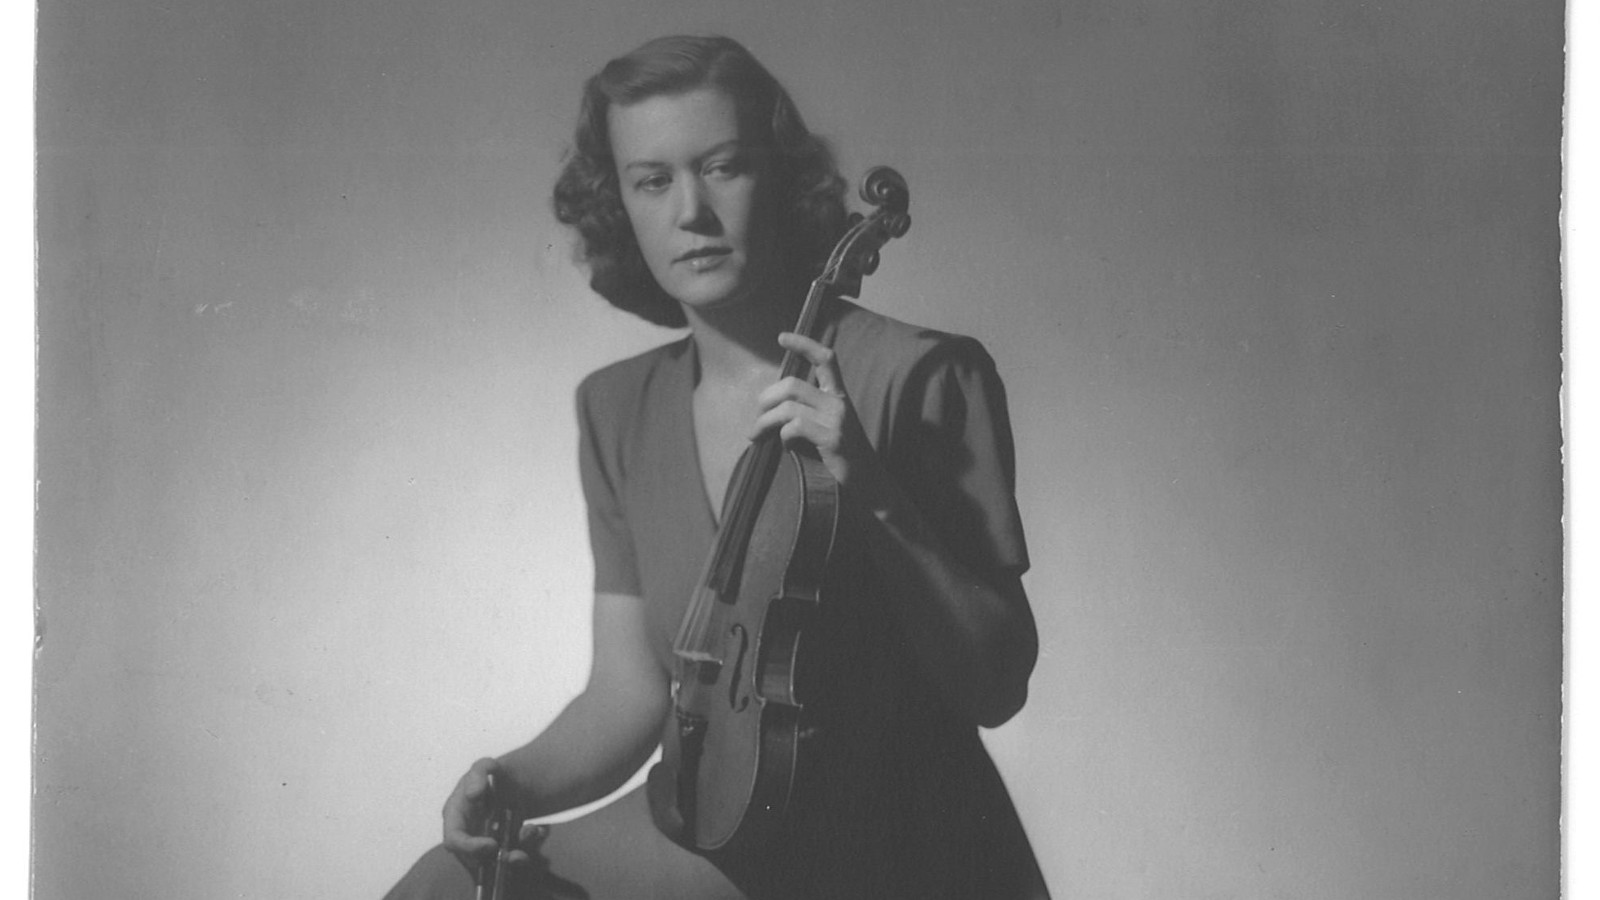 Kuvassa on Anja Ignatius nuorena puolivartalokuvassa viulu toisessa kädessään.  Kuva on musta-valkoinen ja harmaan sävyinen.